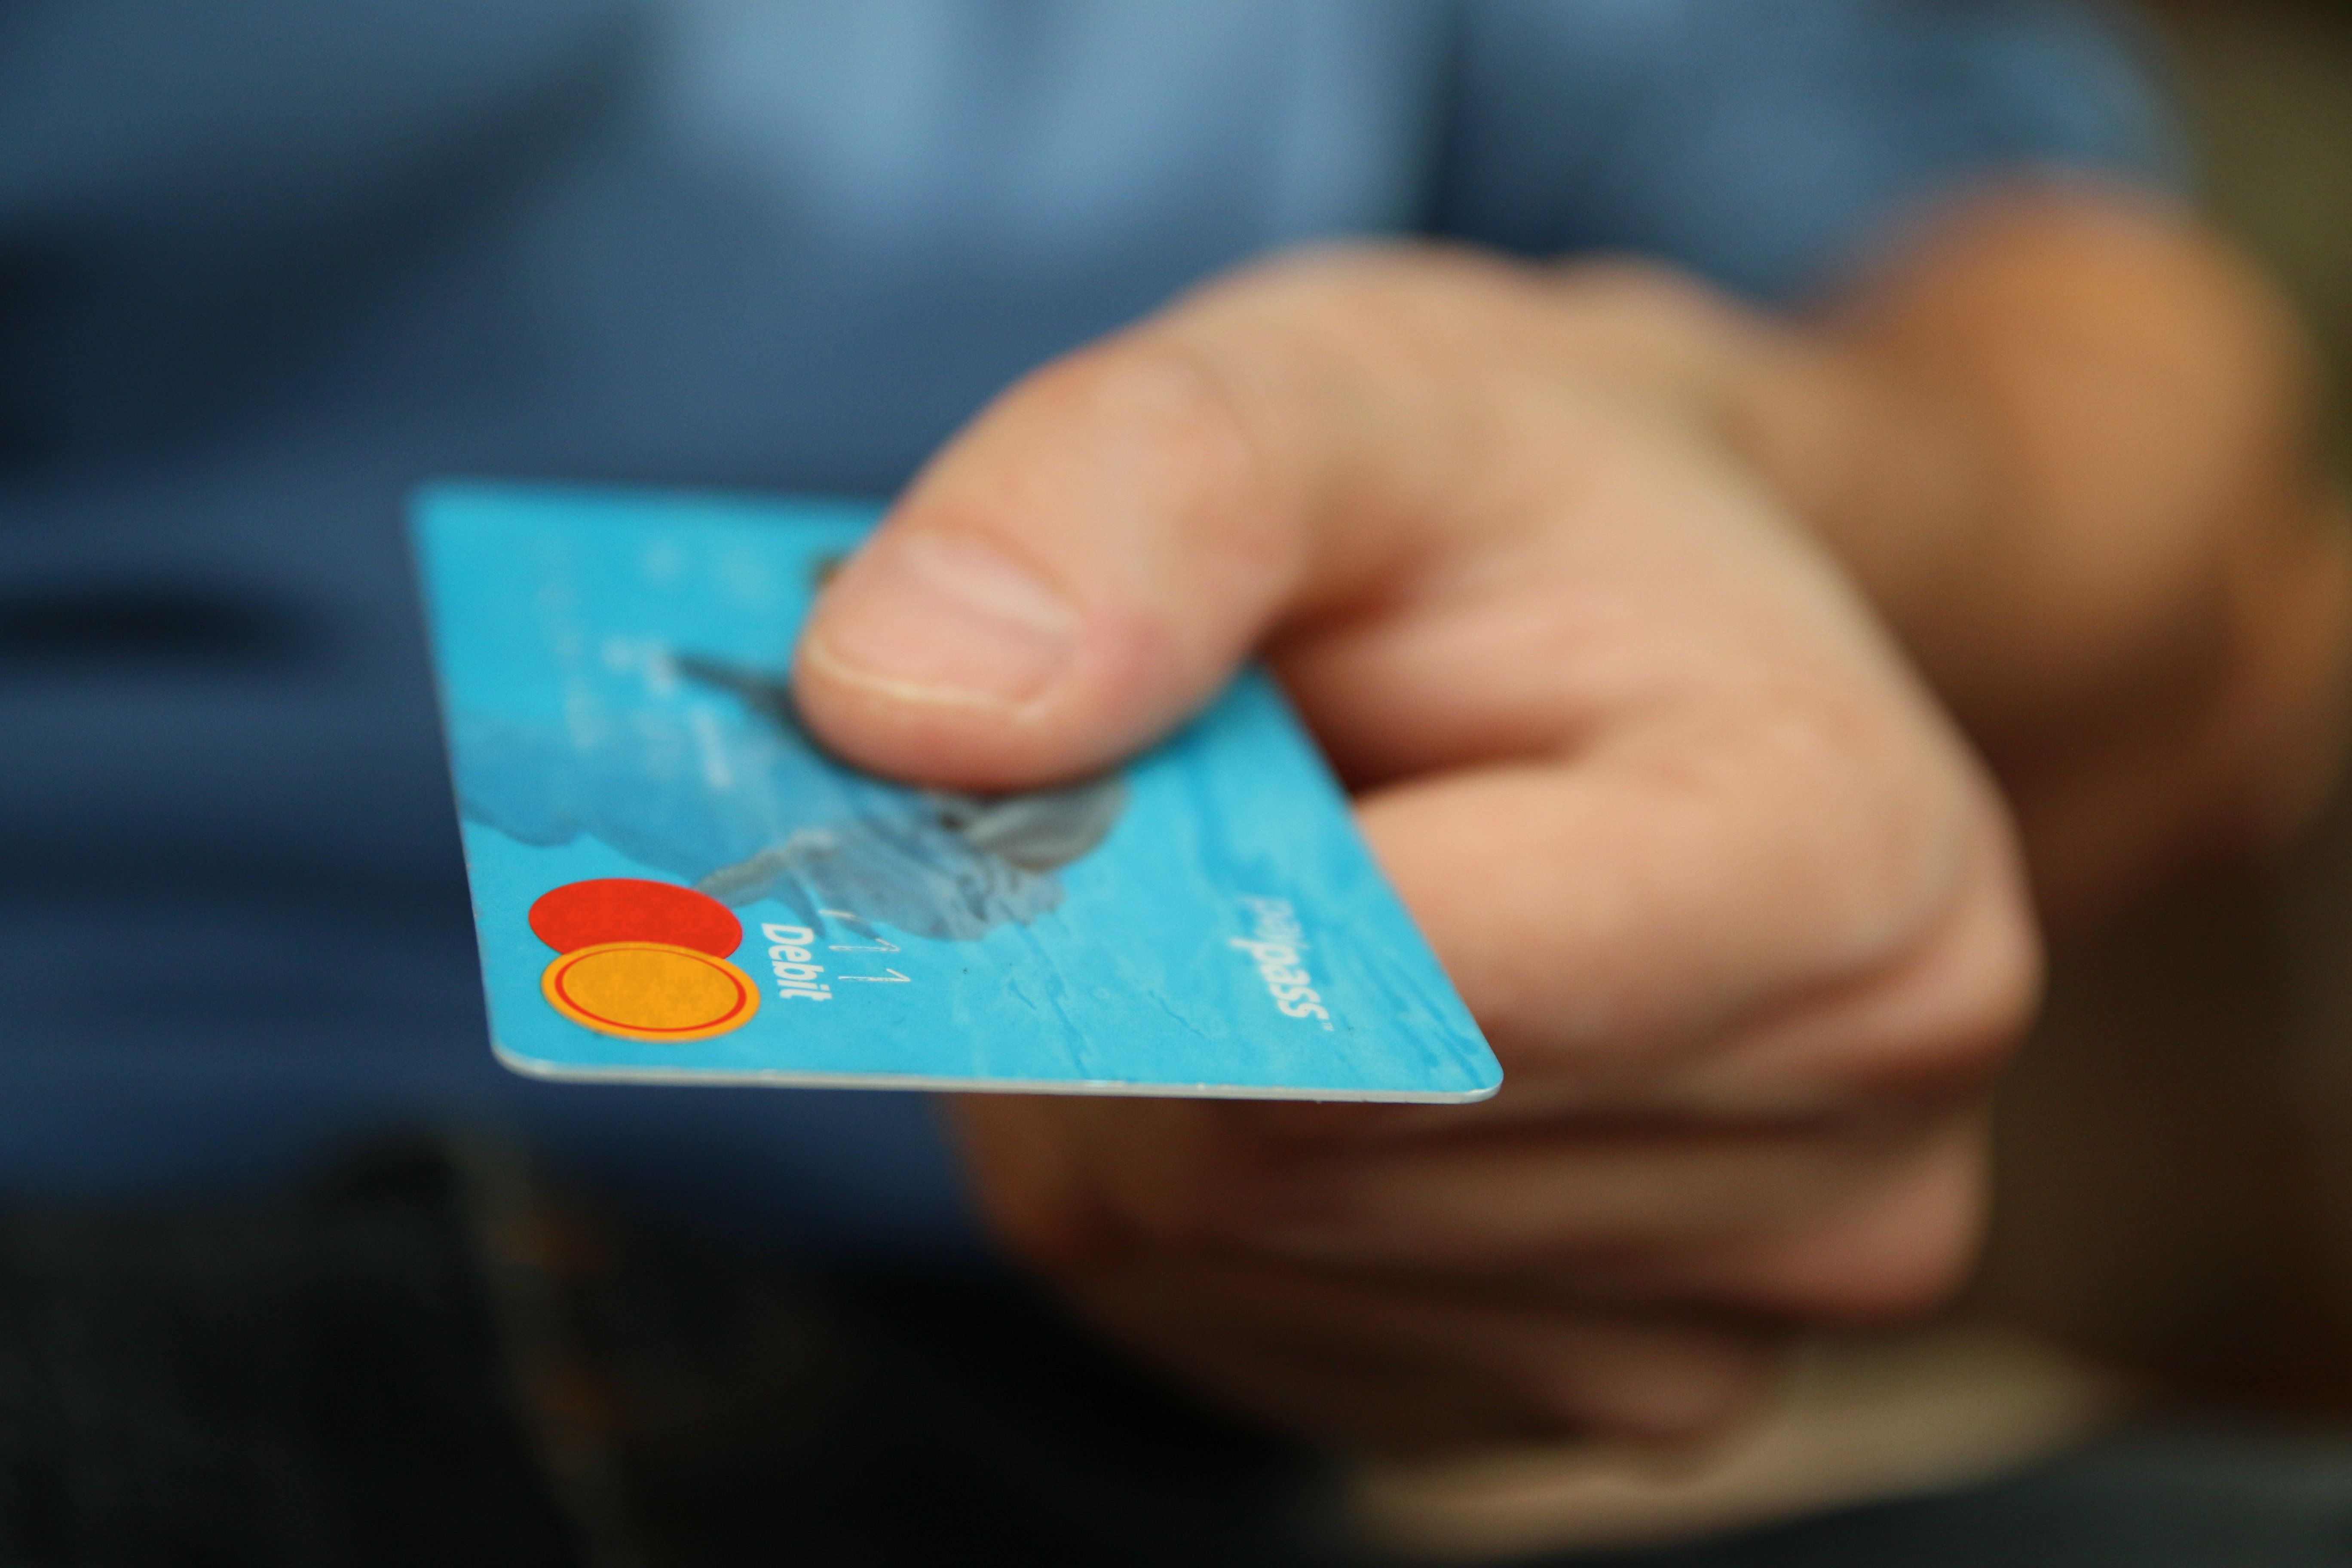 Auto-debit bisa menjadi pilihan bagi Anda yang sering lupa membayar kewajiban, foto ilustrasi.